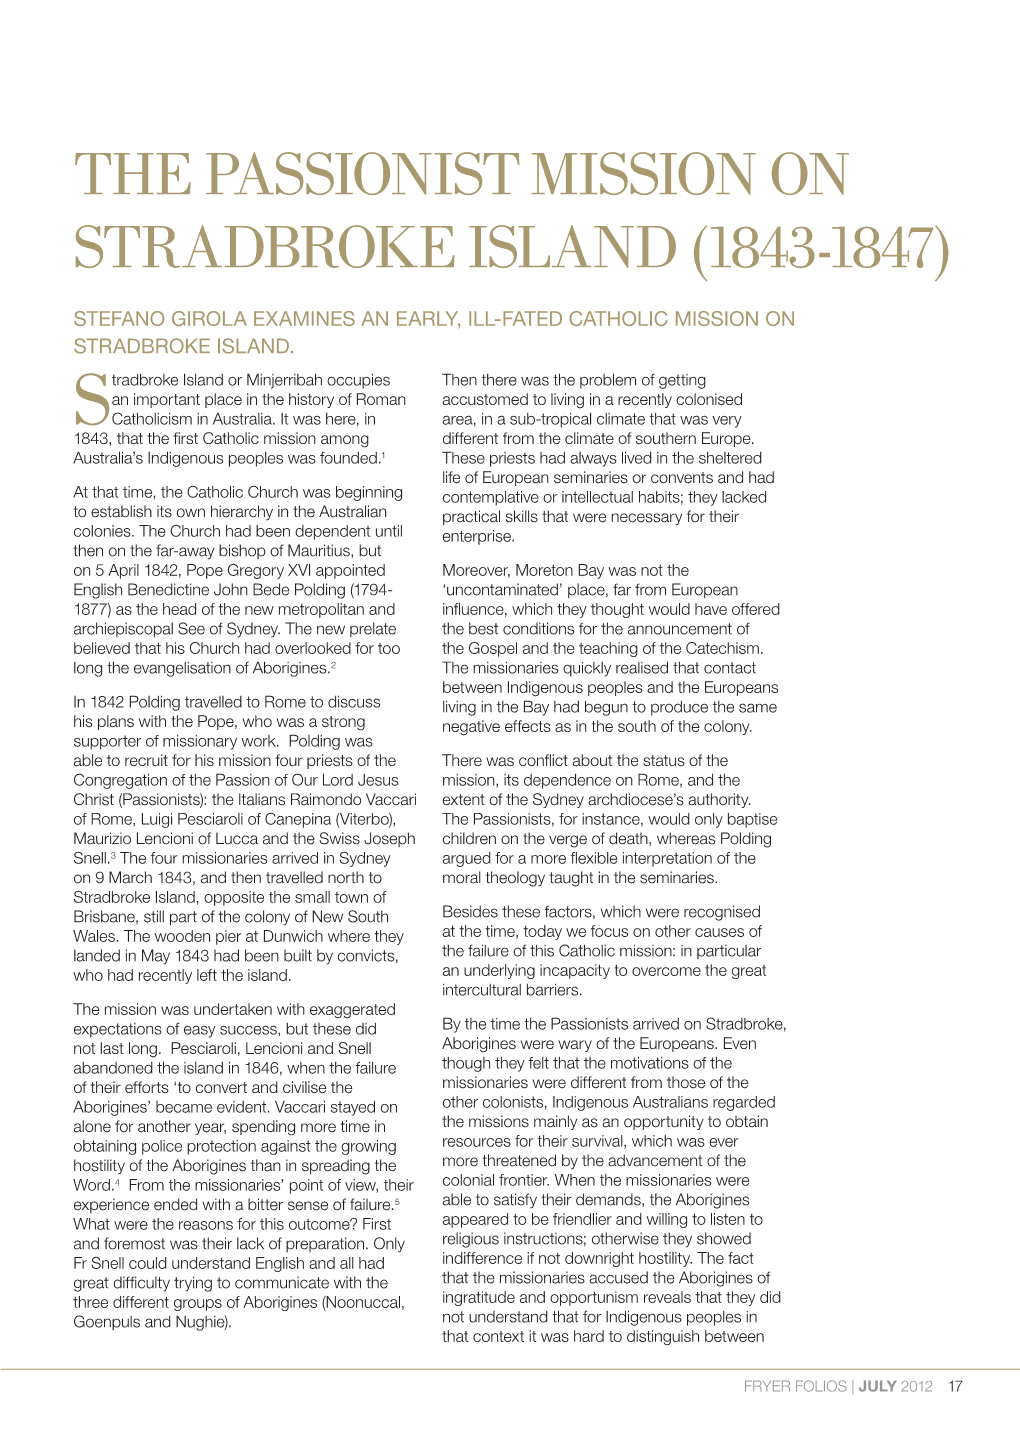 The Passionist Mission on Stradbroke Island (1843-1947)